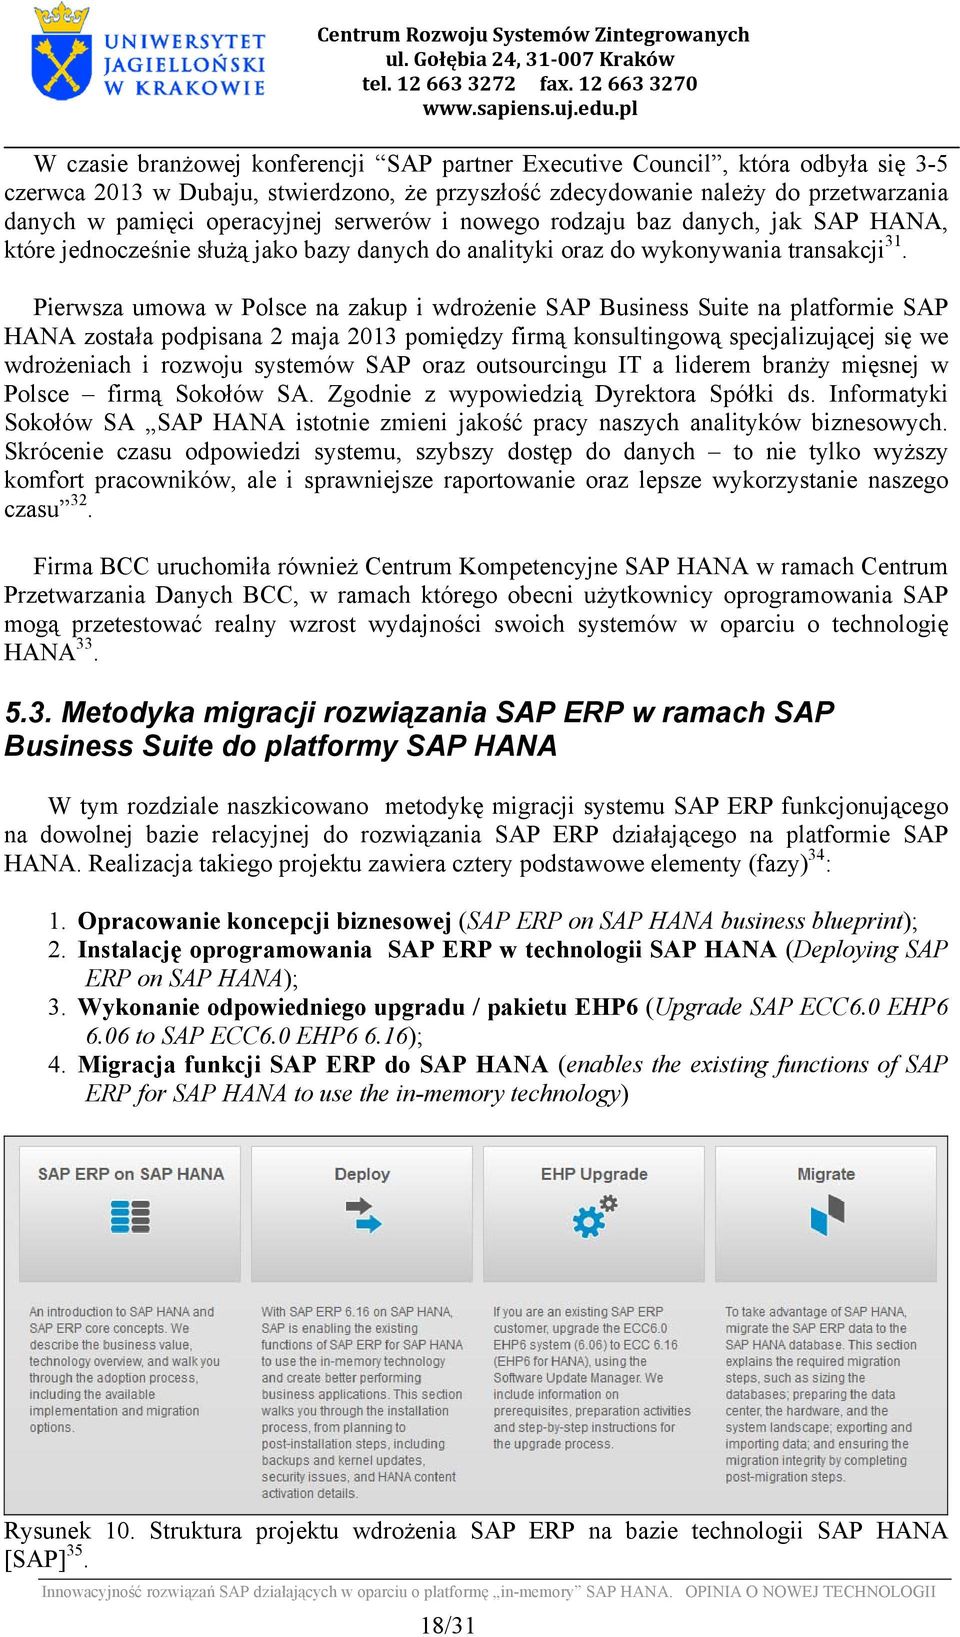 Pierwsza umowa w Polsce na zakup i wdrożenie SAP Business Suite na platformie SAP HANA została podpisana 2 maja 2013 pomiędzy firmą konsultingową specjalizującej się we wdrożeniach i rozwoju systemów